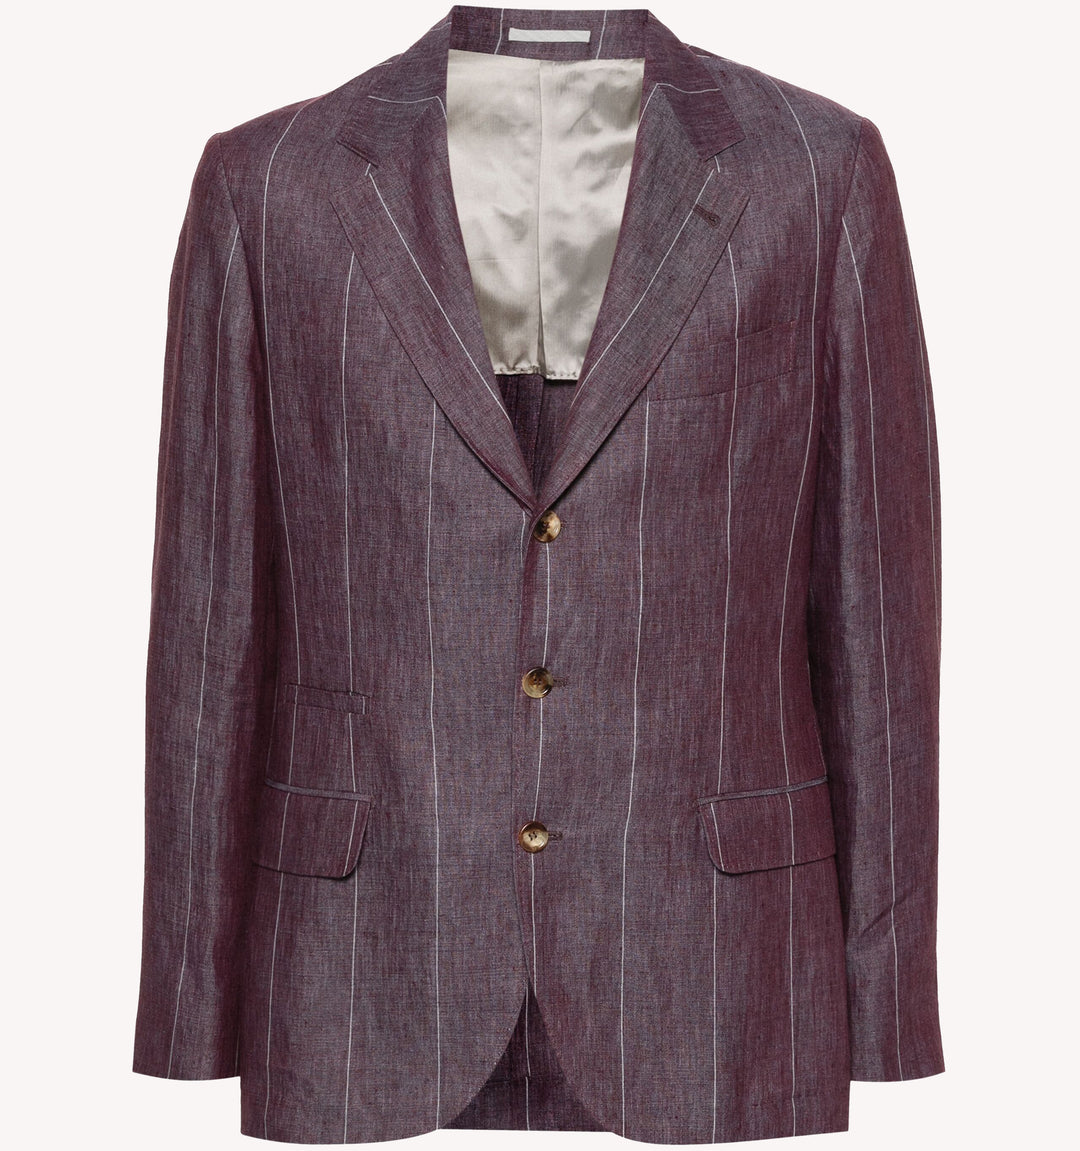 Brunello Cucinelli Pin Stripe Sport Coat in Amethyst Purple